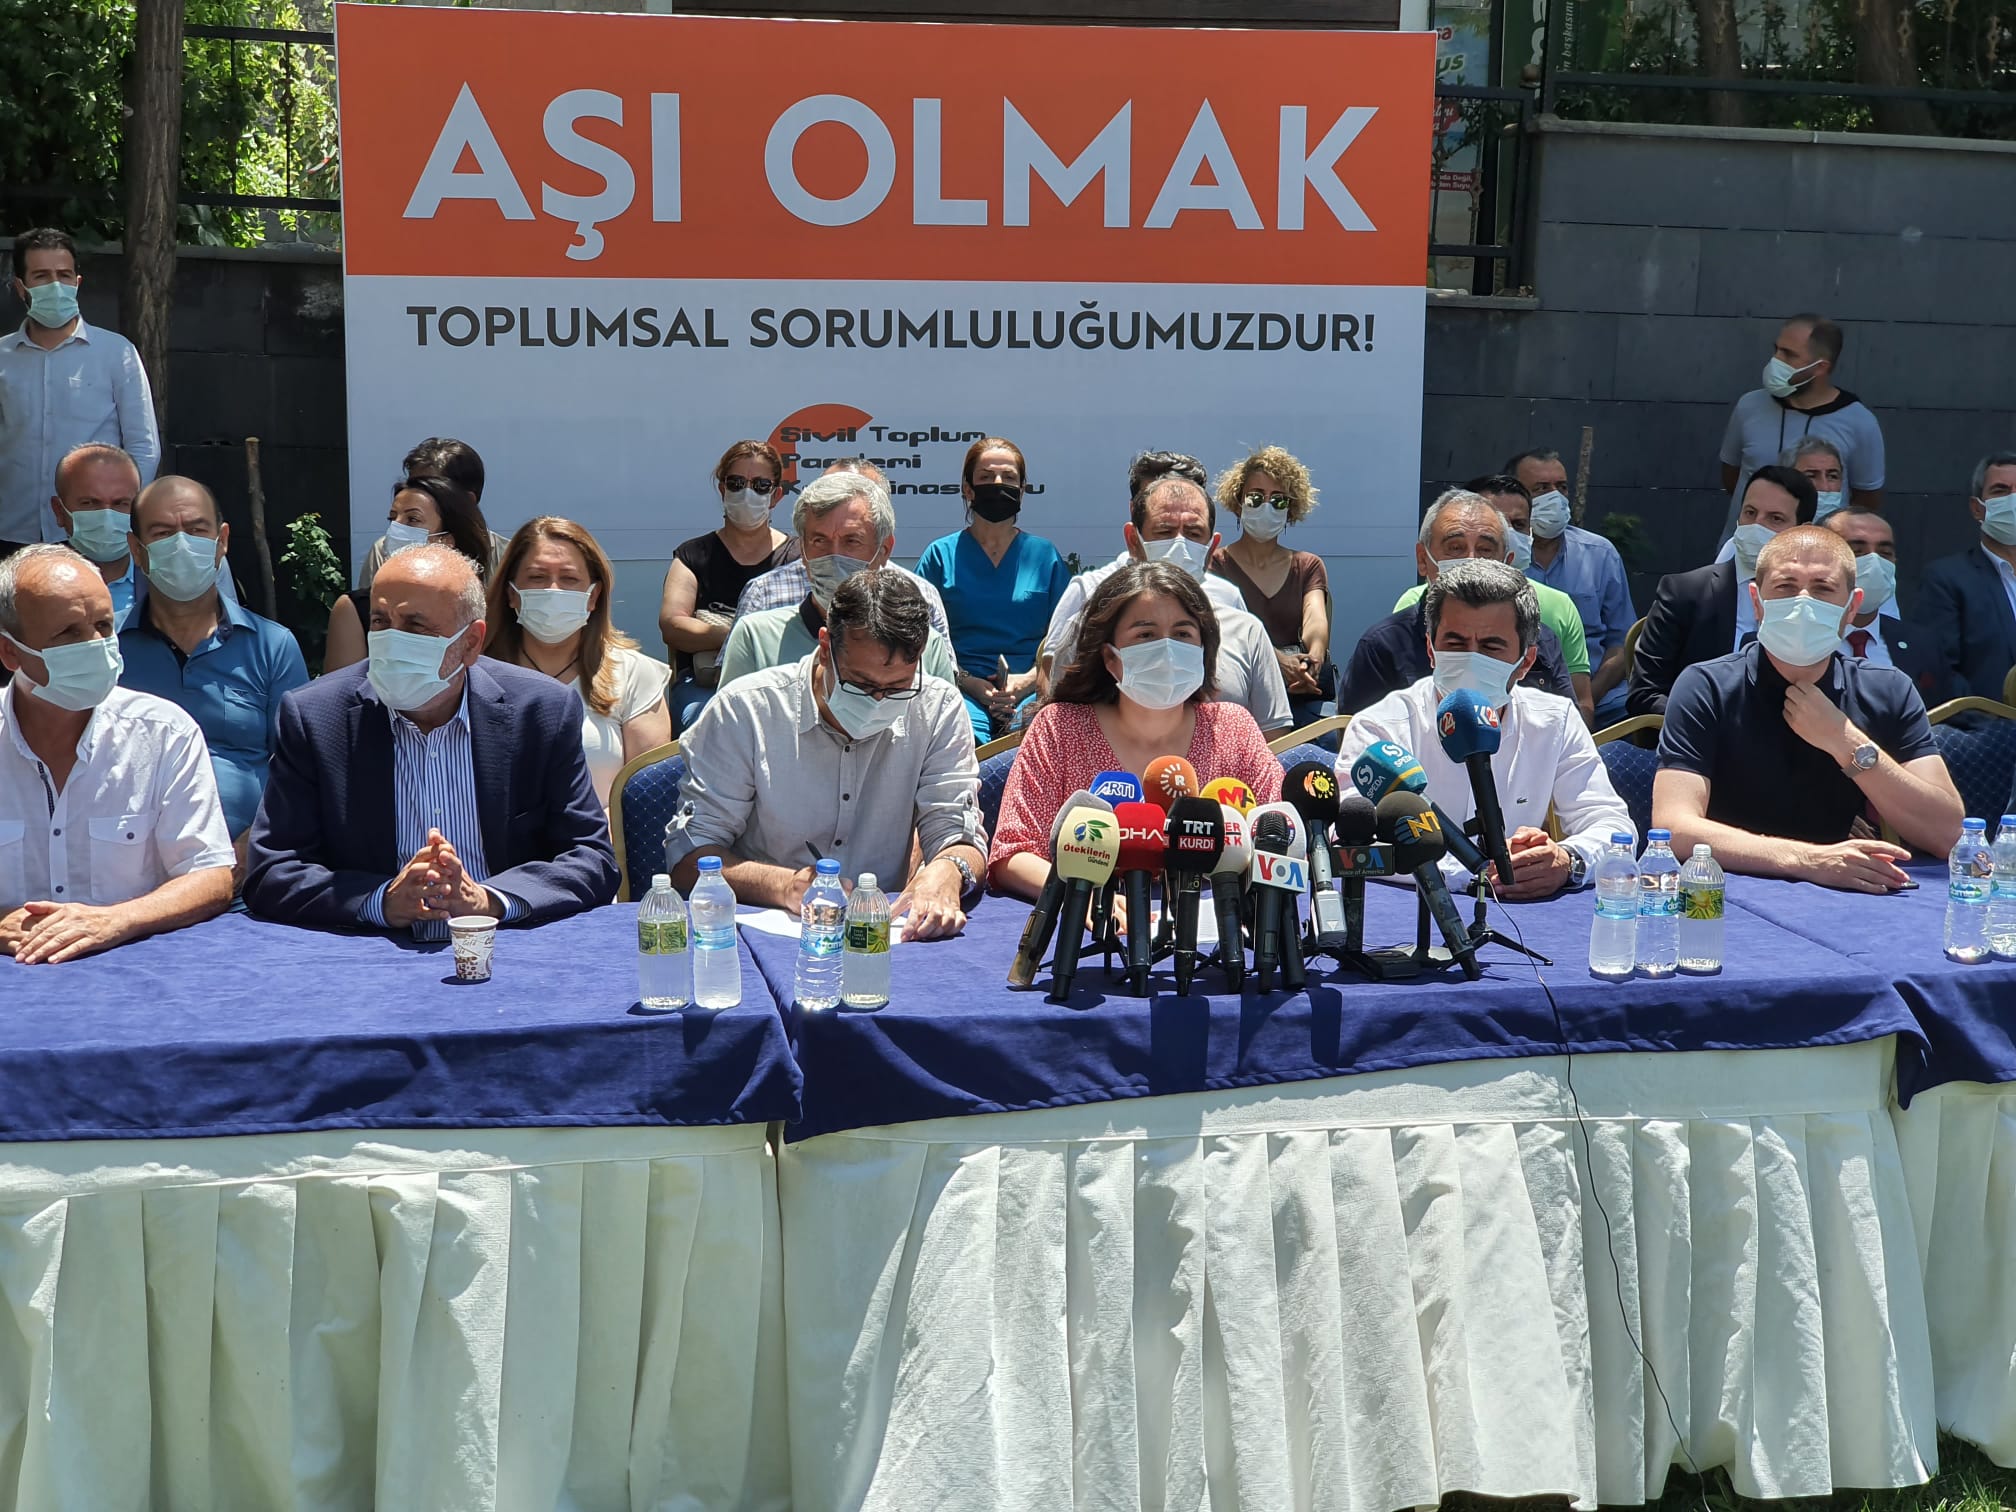 Diyarbakır'daki STK'lardan çağrı: Aşı olmak toplumsal sorumluluğumuzdur